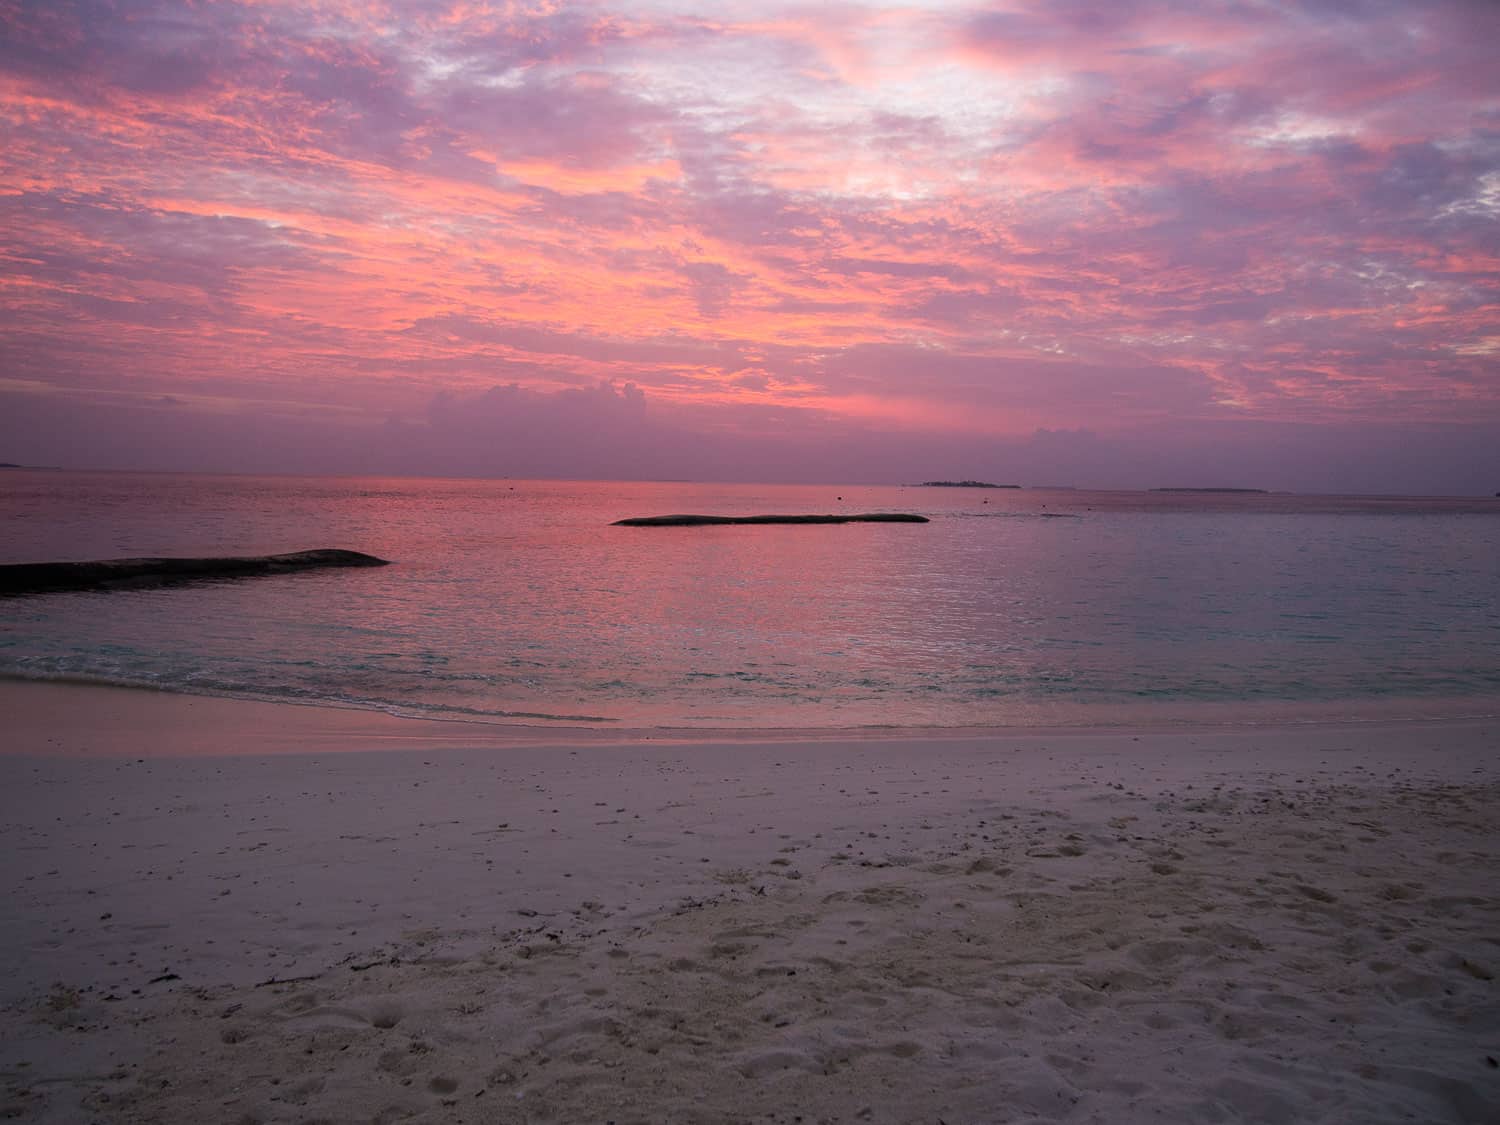 Sunset at Reethi Beach